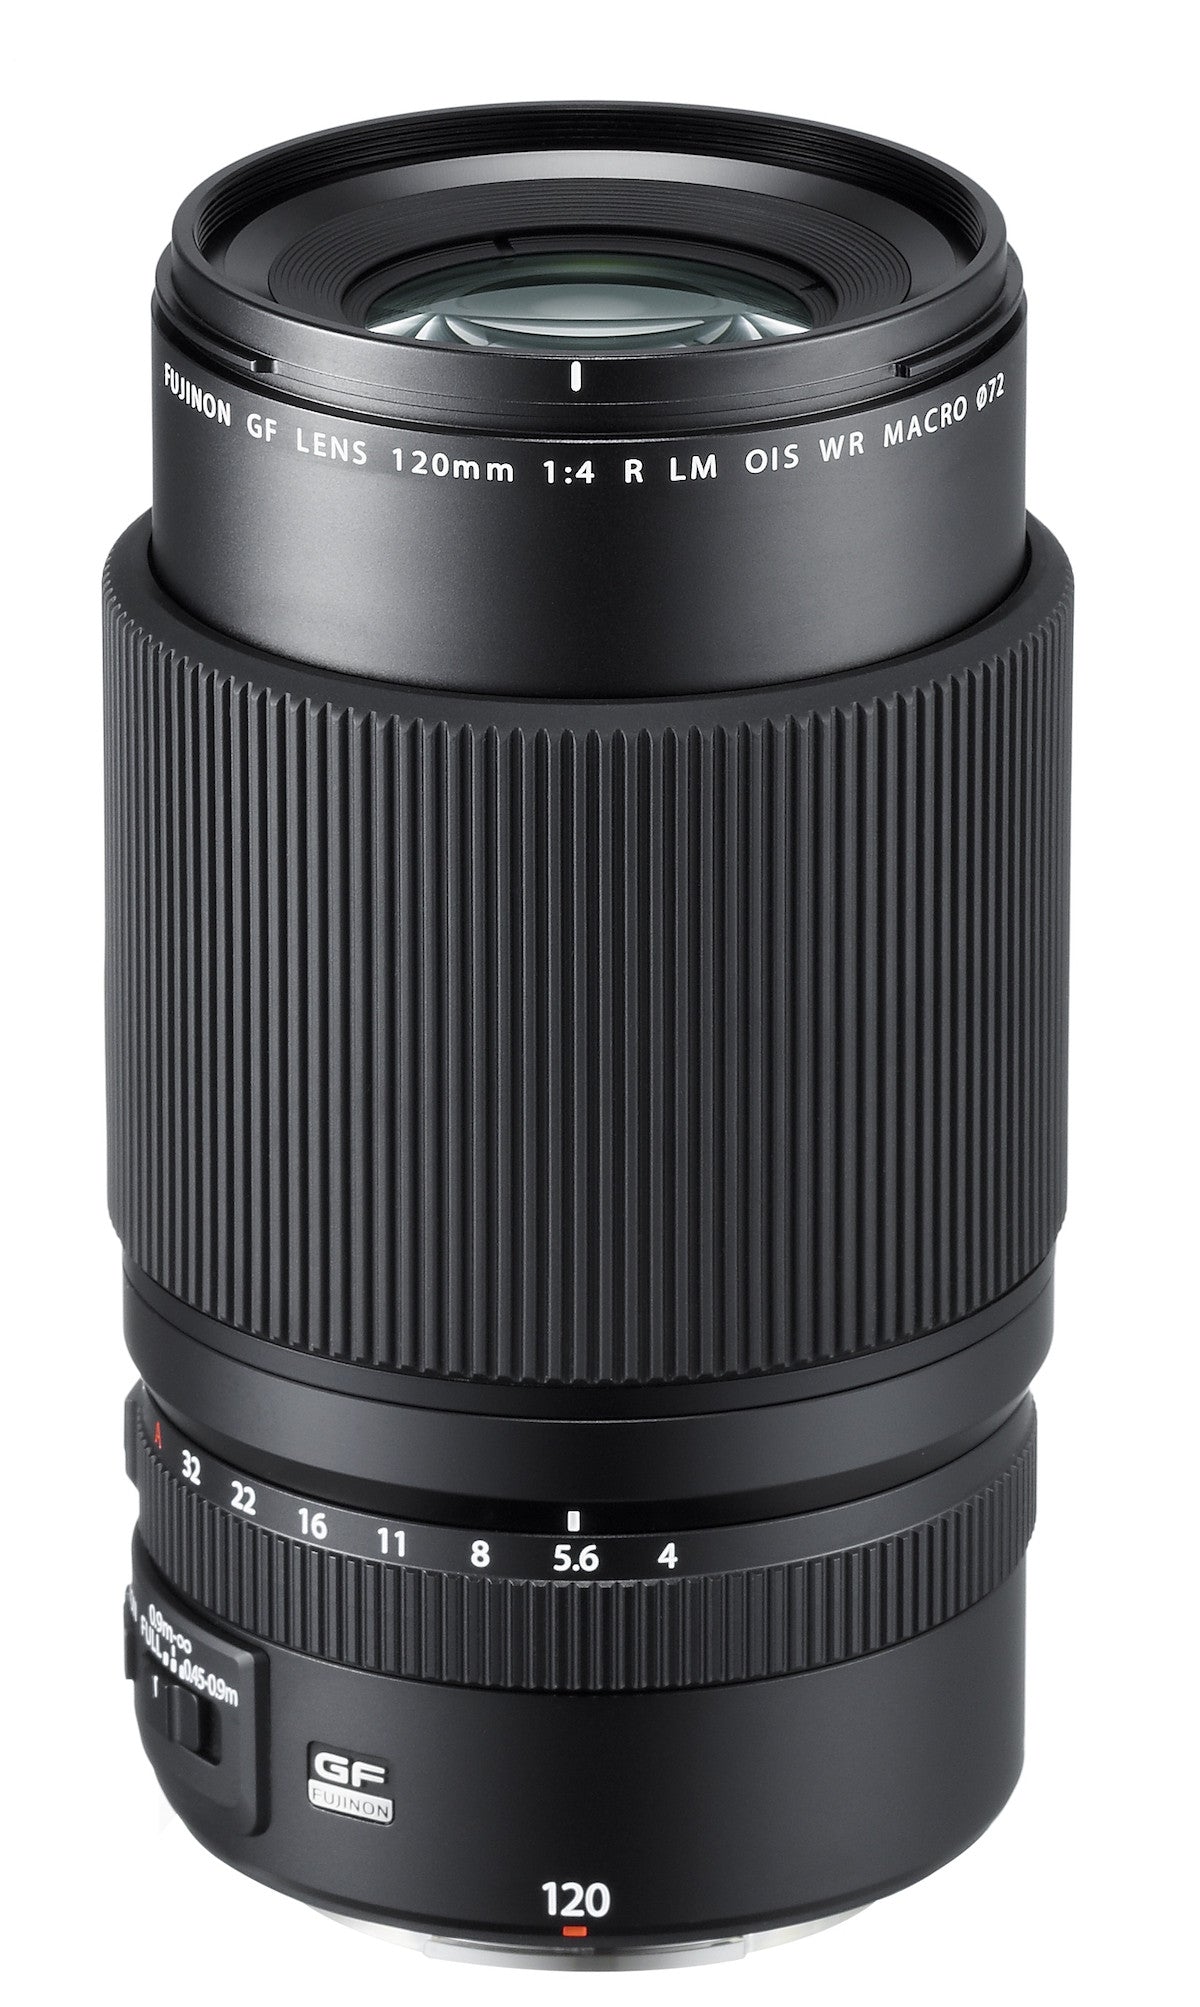 Fujifilm GF 120mm f4 R LM OIS WR Macro Lens, lenses medium format, Fujifilm - Pictureline  - 1